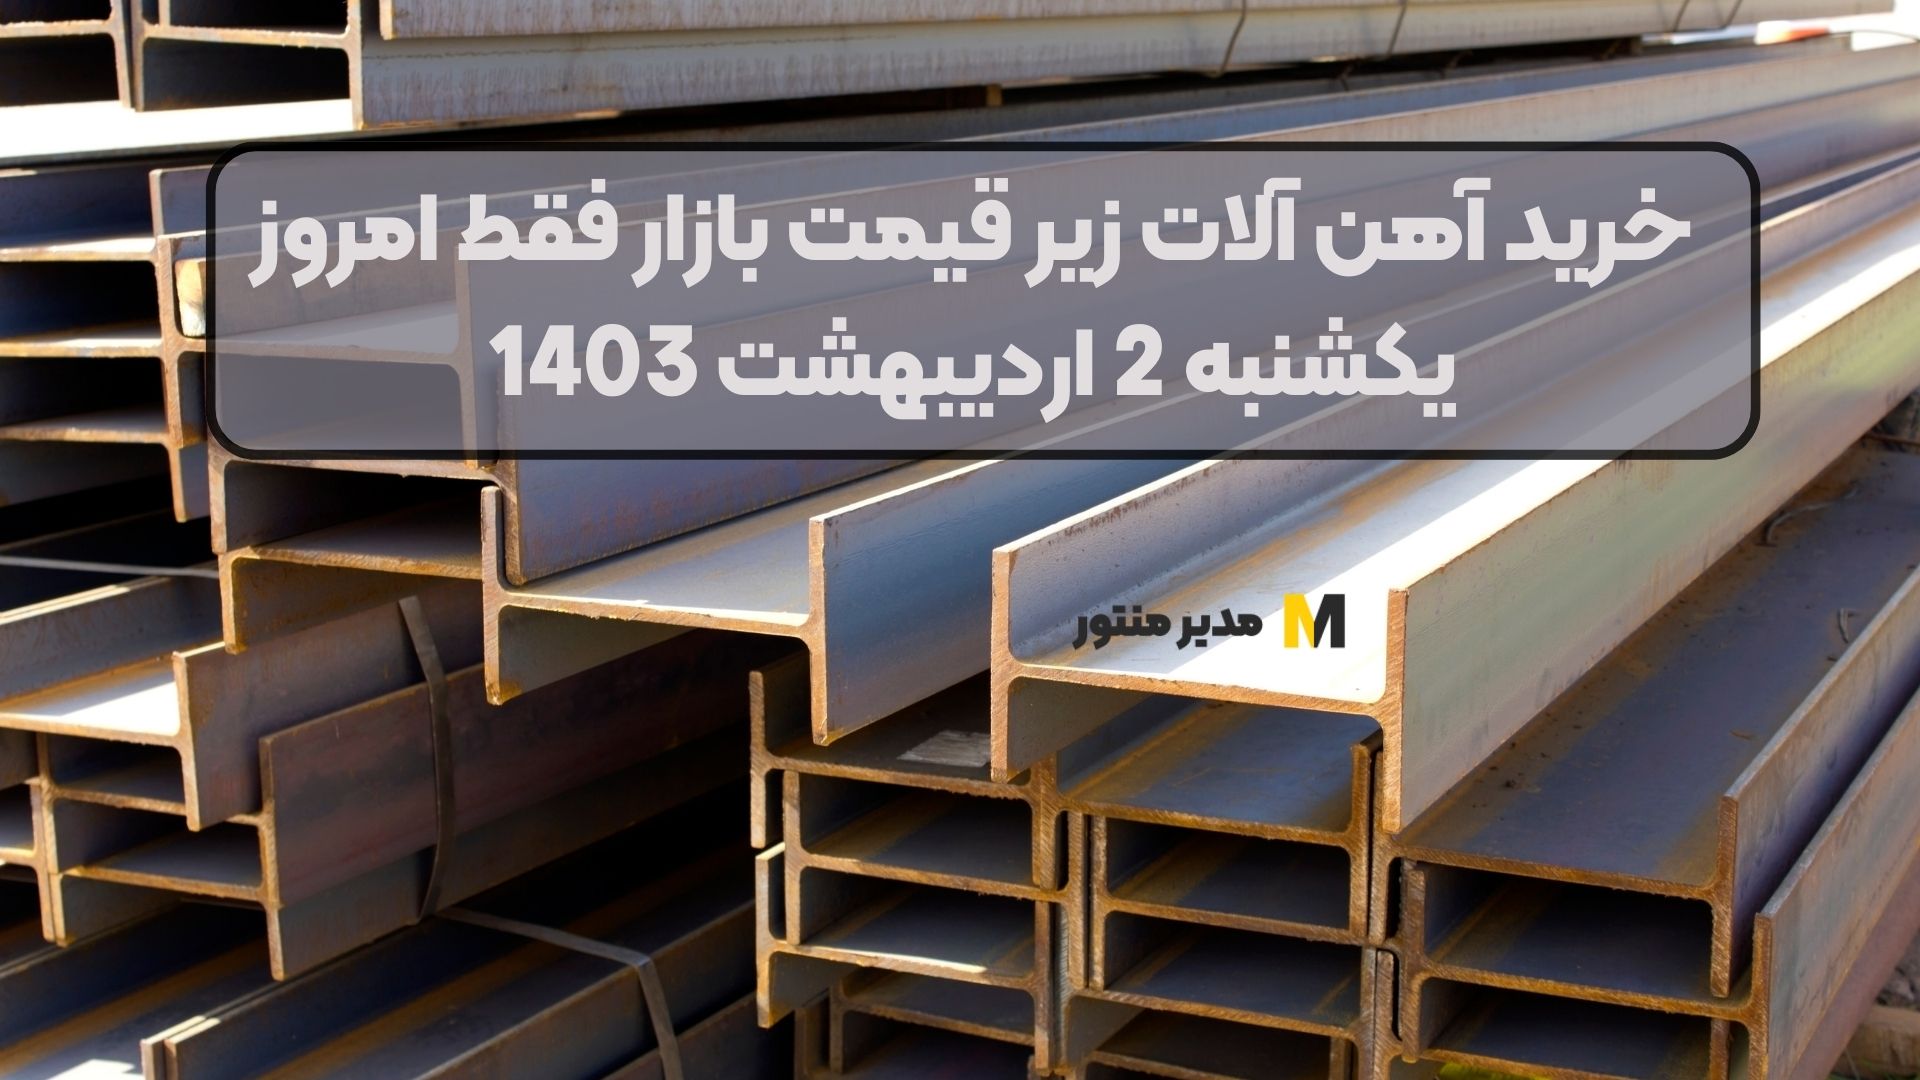 خرید آهن آلات زیر قیمت بازار فقط امروز یکشنبه 2 اردیبهشت 1403